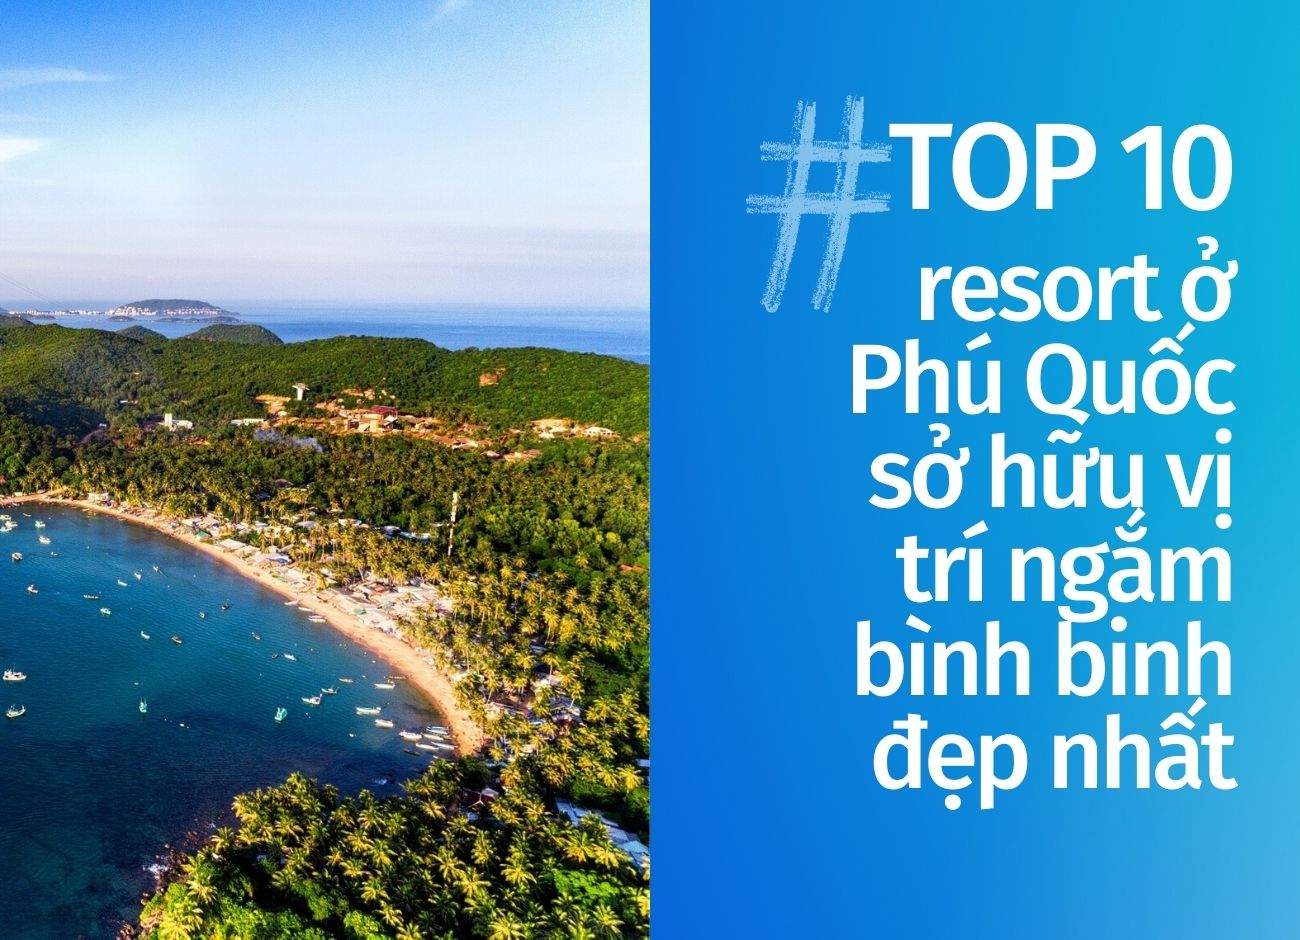 Top 10 resort Phú Quốc sở hữu vị trí ngắm bình binh đẹp nhất cập nhật tháng 08 năm 2022